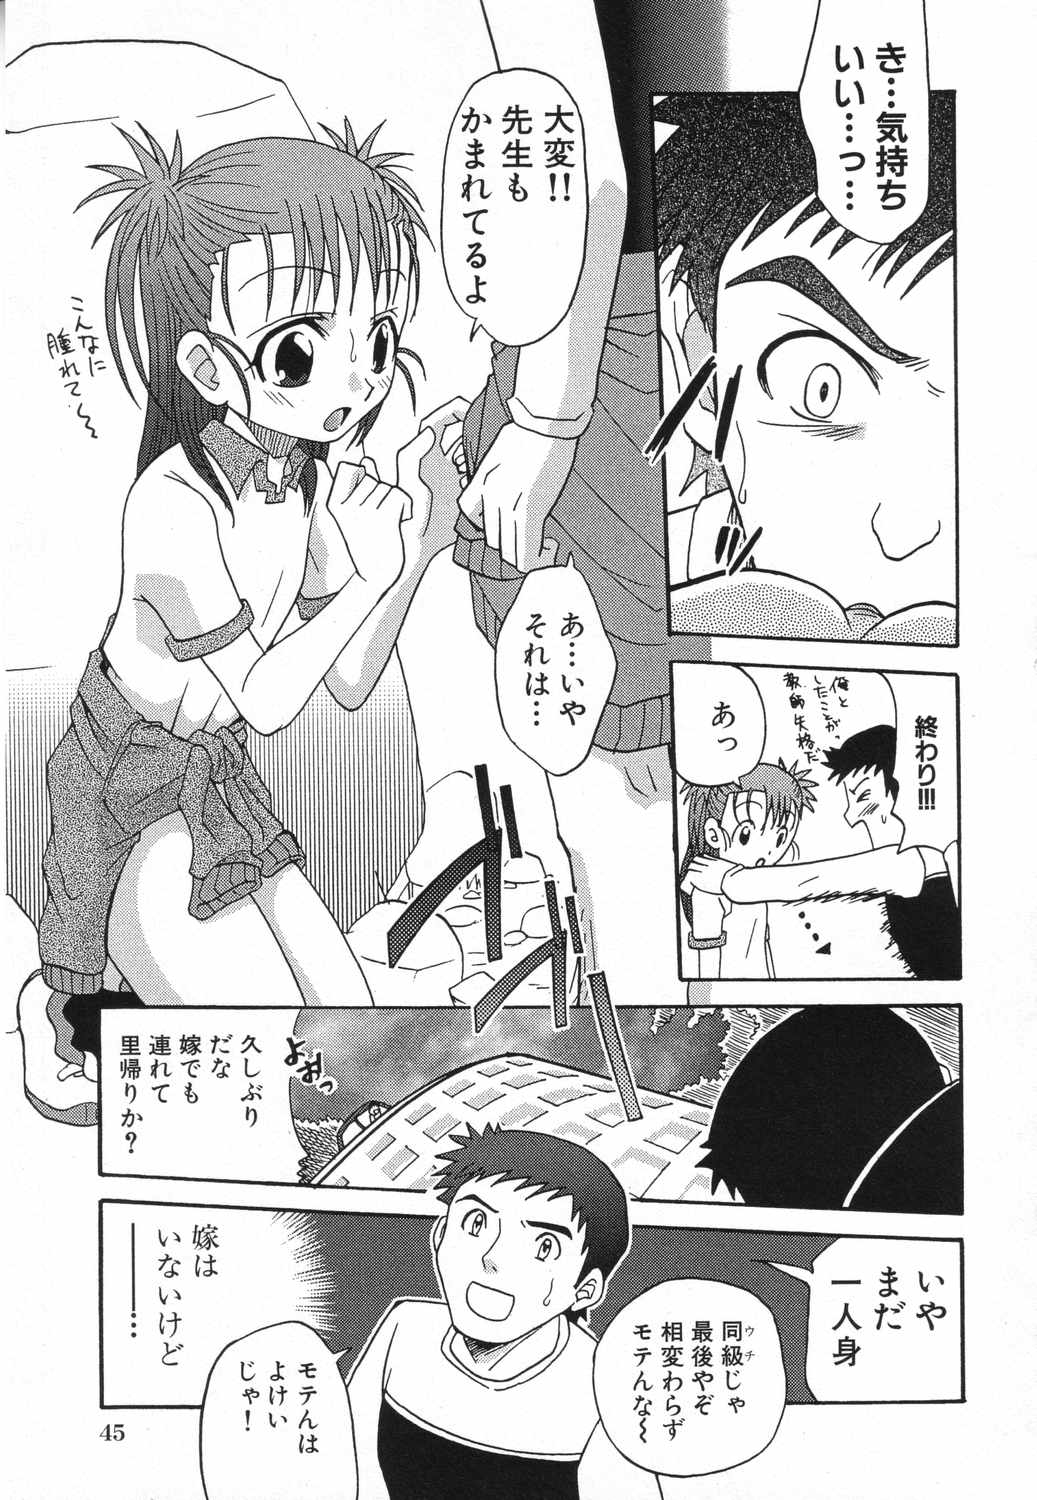 [Anthology] LOCO vol.5 Aki no Omorashi Musume Tokushuu page 48 full